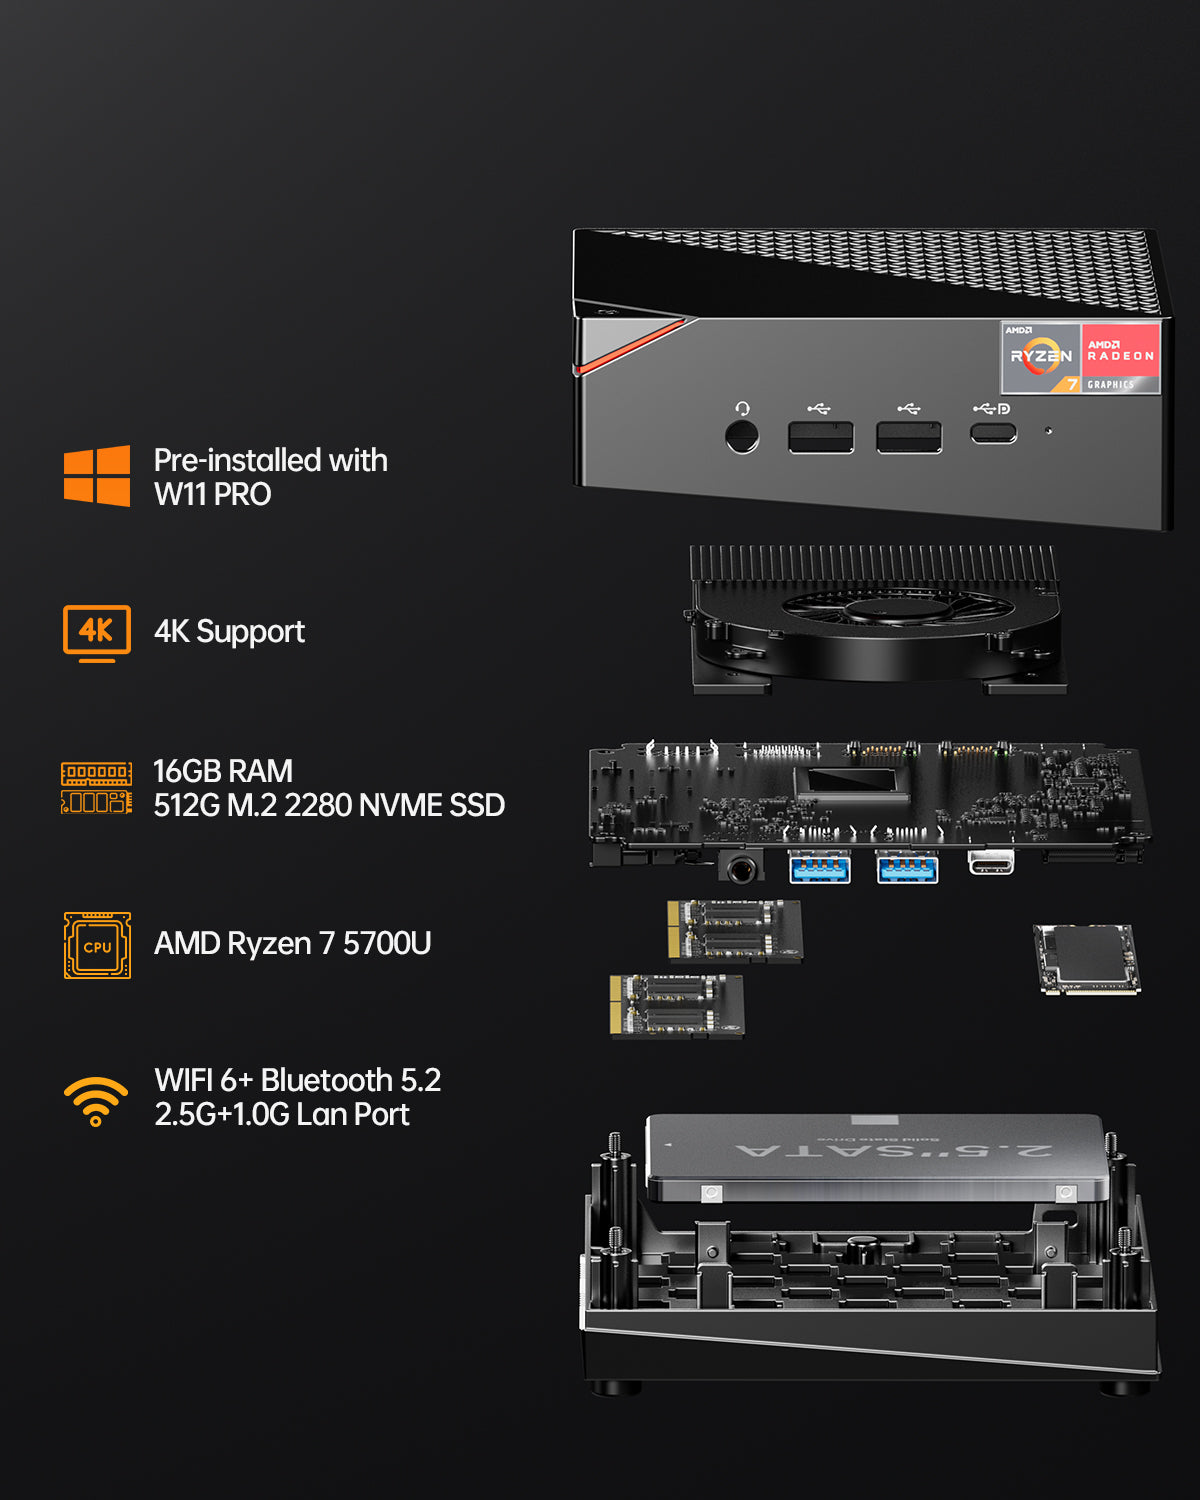 AOOSTAR MN57 AMD Ryzen 7 5700U Mini PC（8C/16T.up to 4.3GHz）with W11 PRO DDR4 16GB/32GB + 512GB/1T NVME SSD